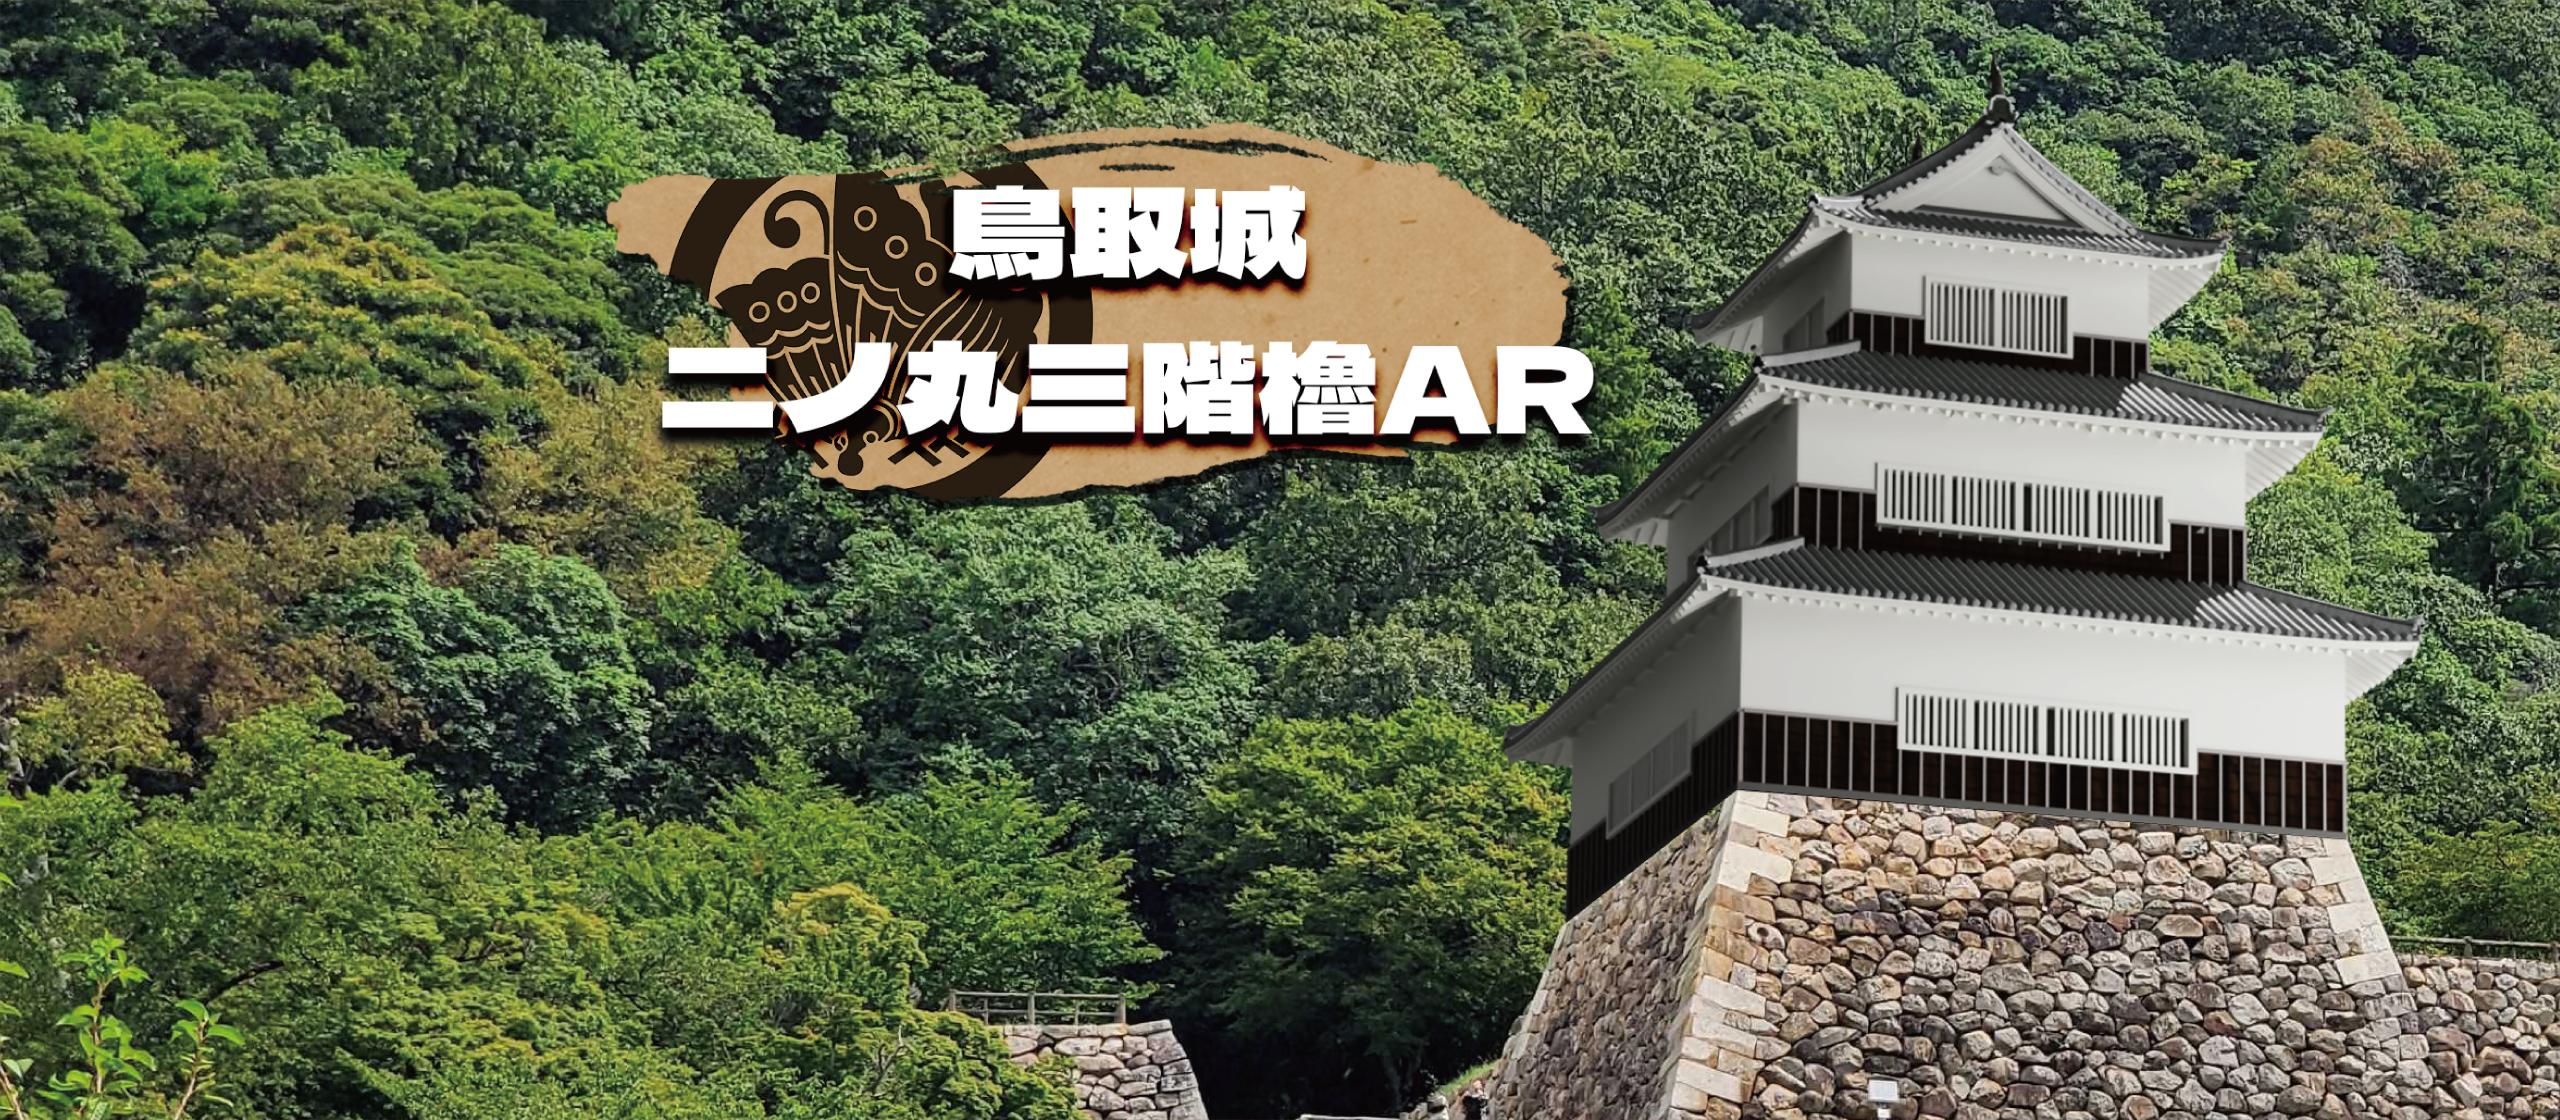 鳥取城三階櫓AR